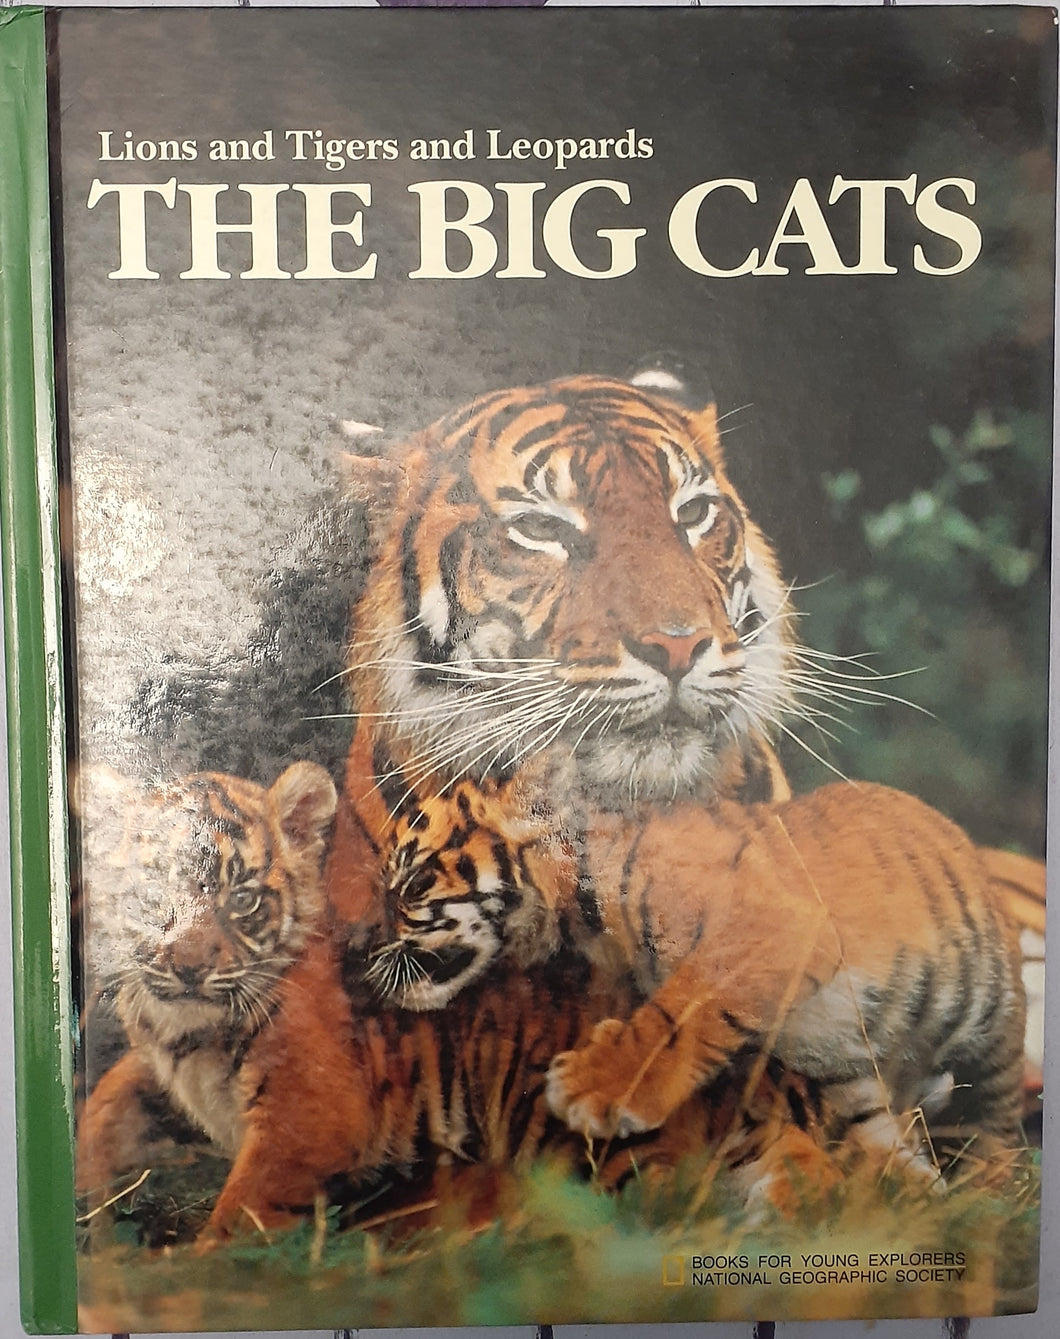 The Big Cats